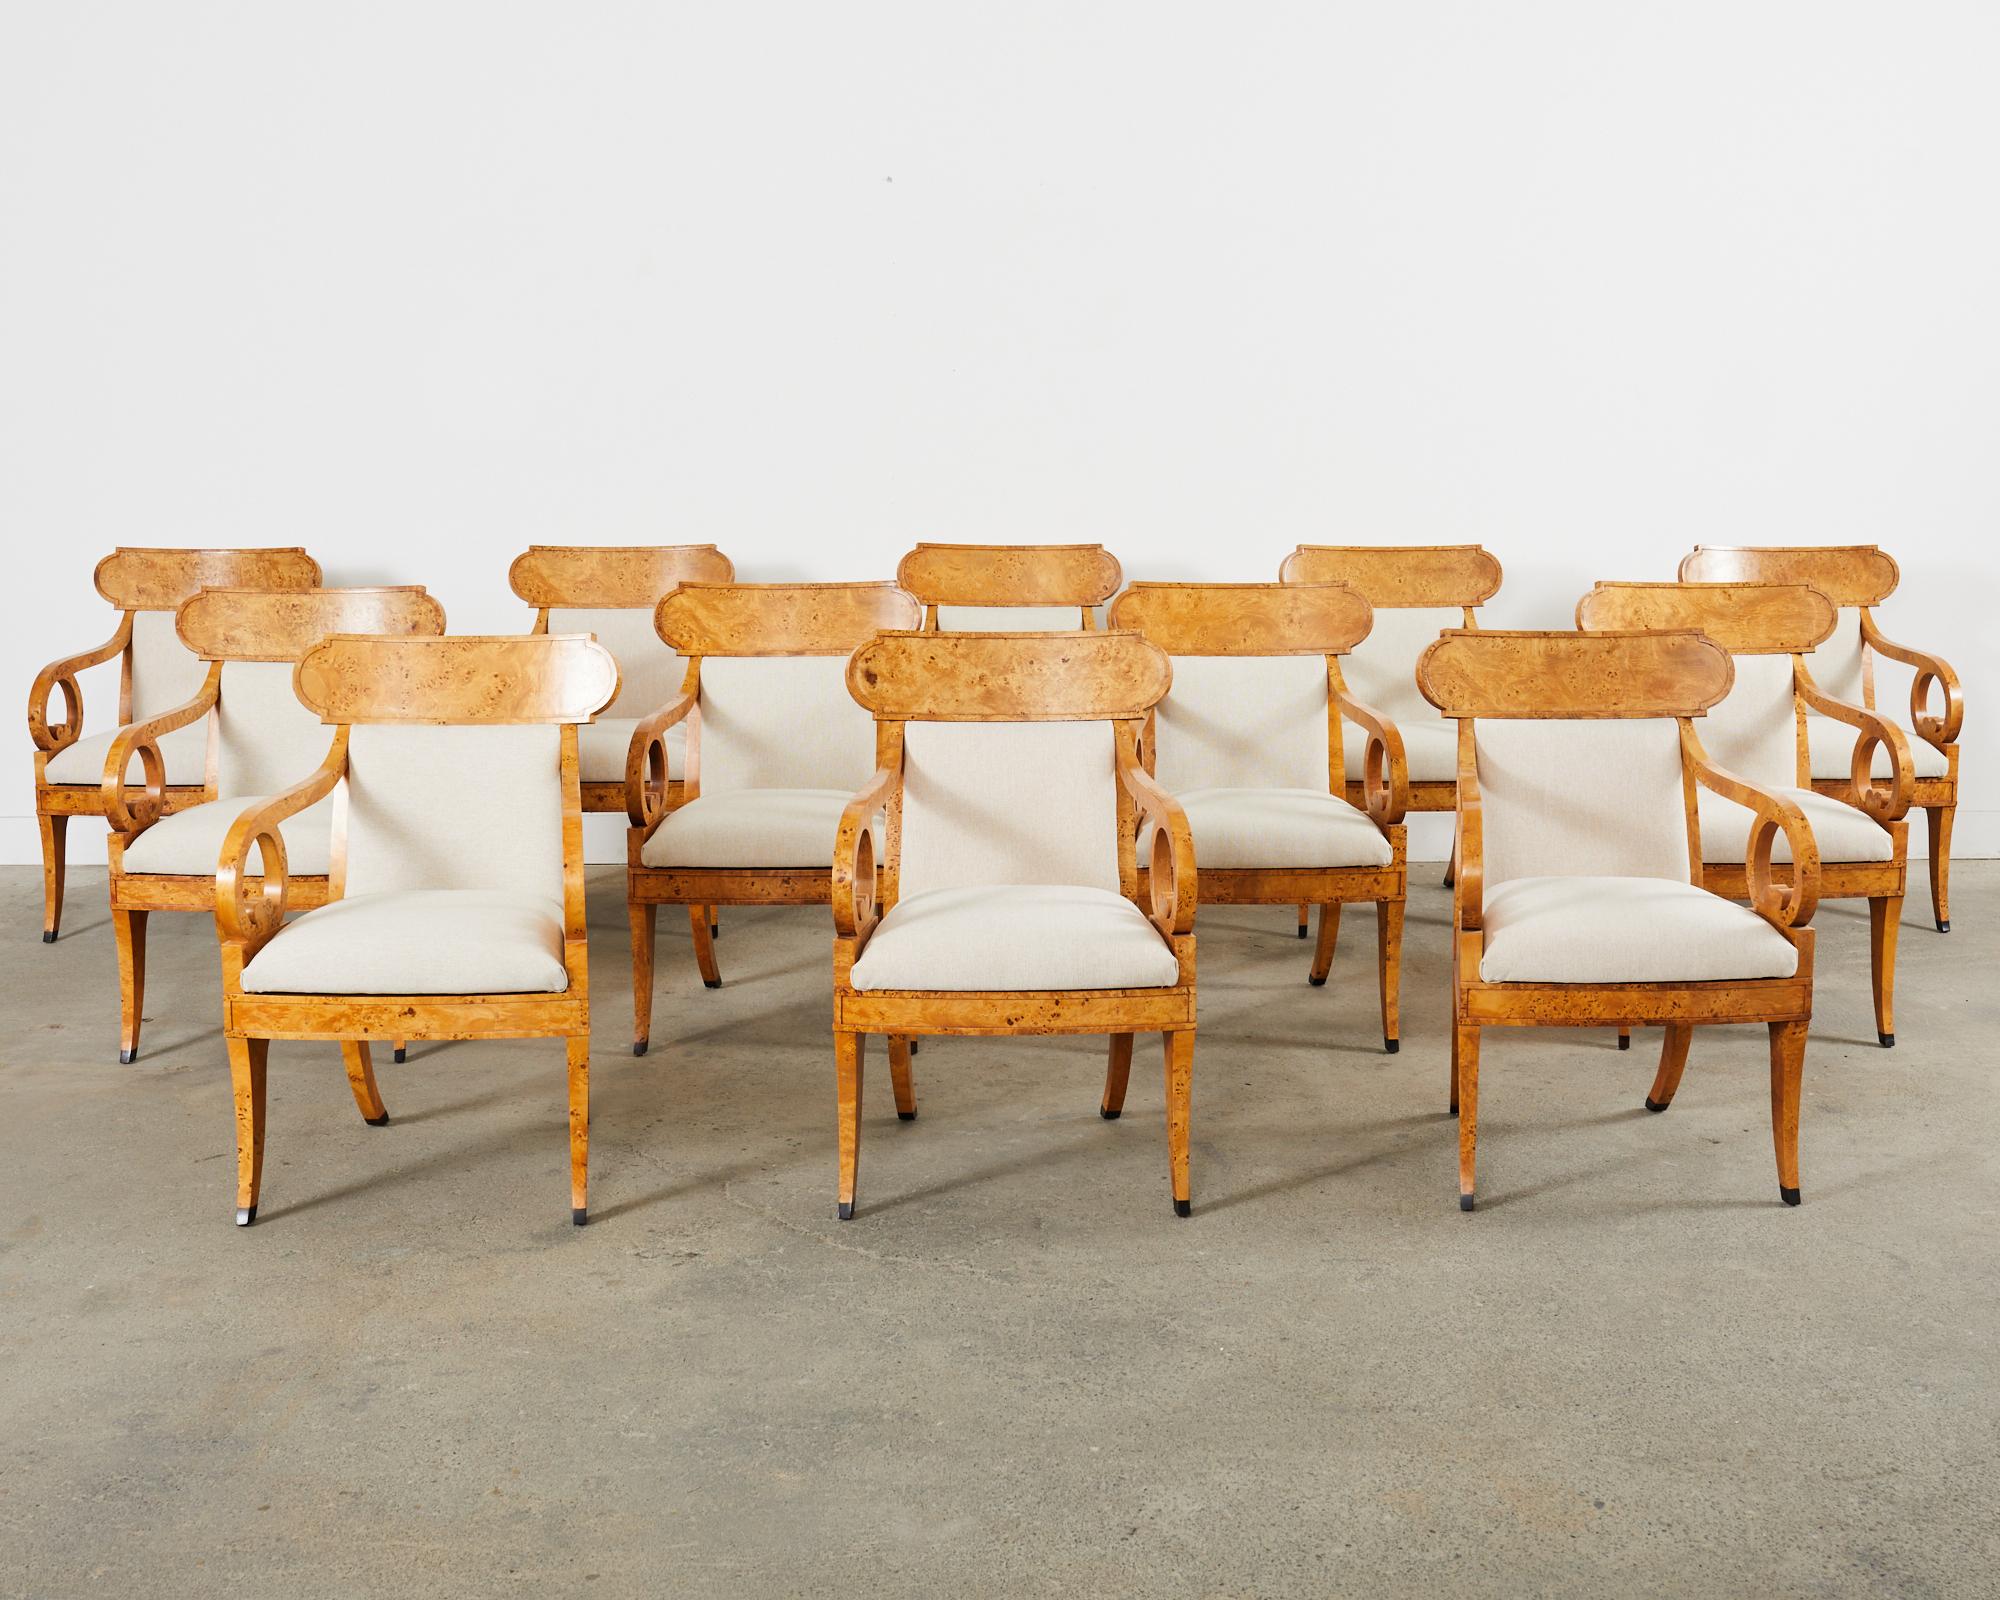 Prächtiger Satz von zwölf englischen Klismos-Sesseln oder Esszimmerstühlen im Regency-Stil von Baker Furniture. Die handgefertigten Rahmen sind durchgehend mit dramatischen Wurzelholzfurnieren verkleidet. Die geschwungene Rückenlehne in Form eines